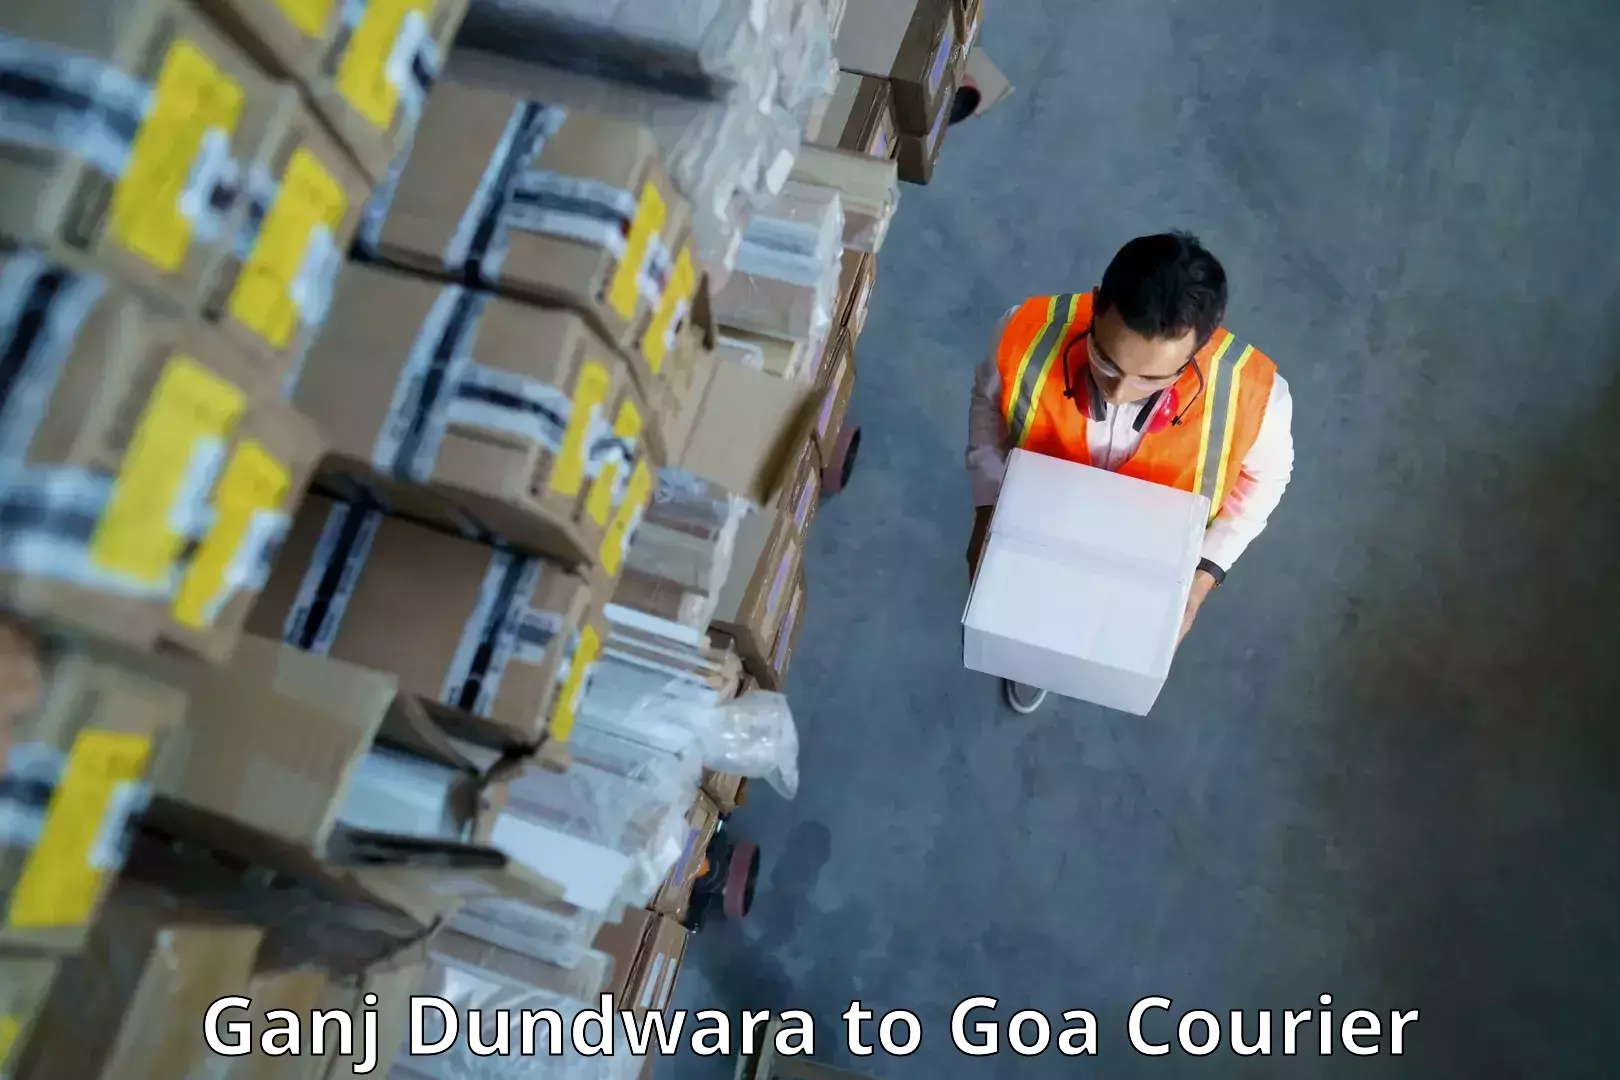 Seamless shipping experience Ganj Dundwara to Bicholim